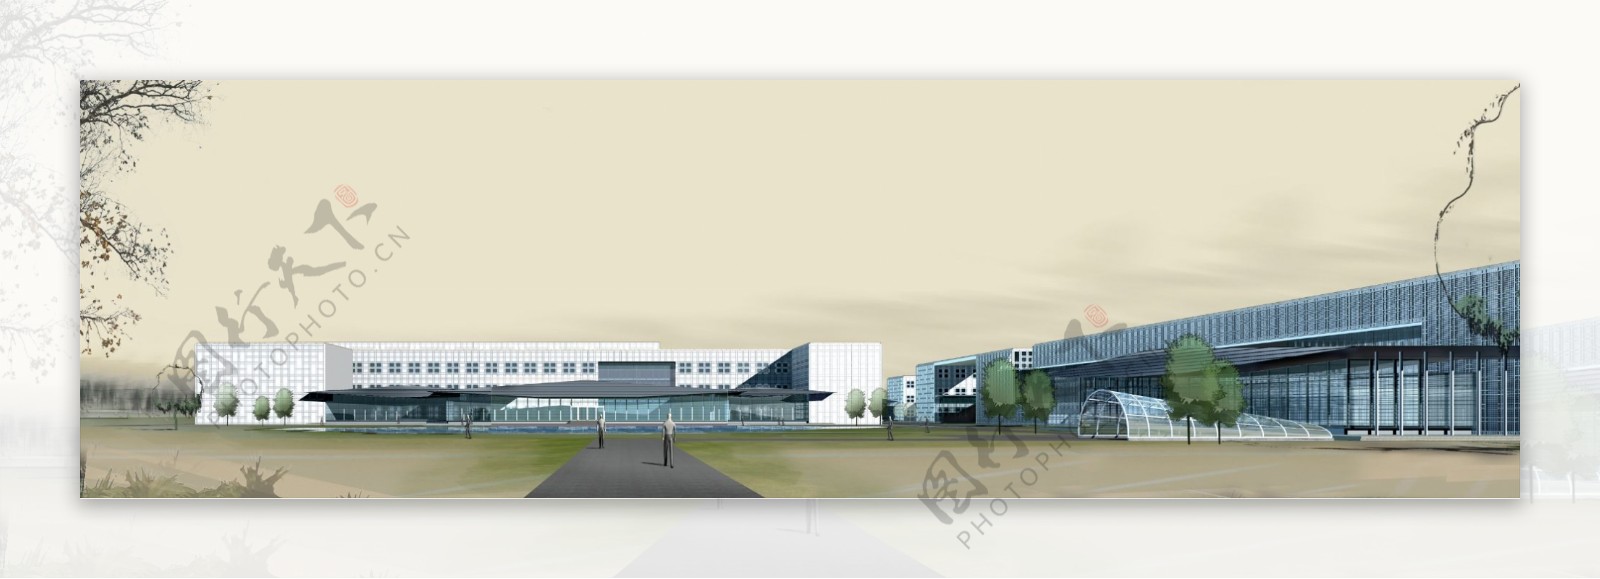 仓储中心环境设计图片